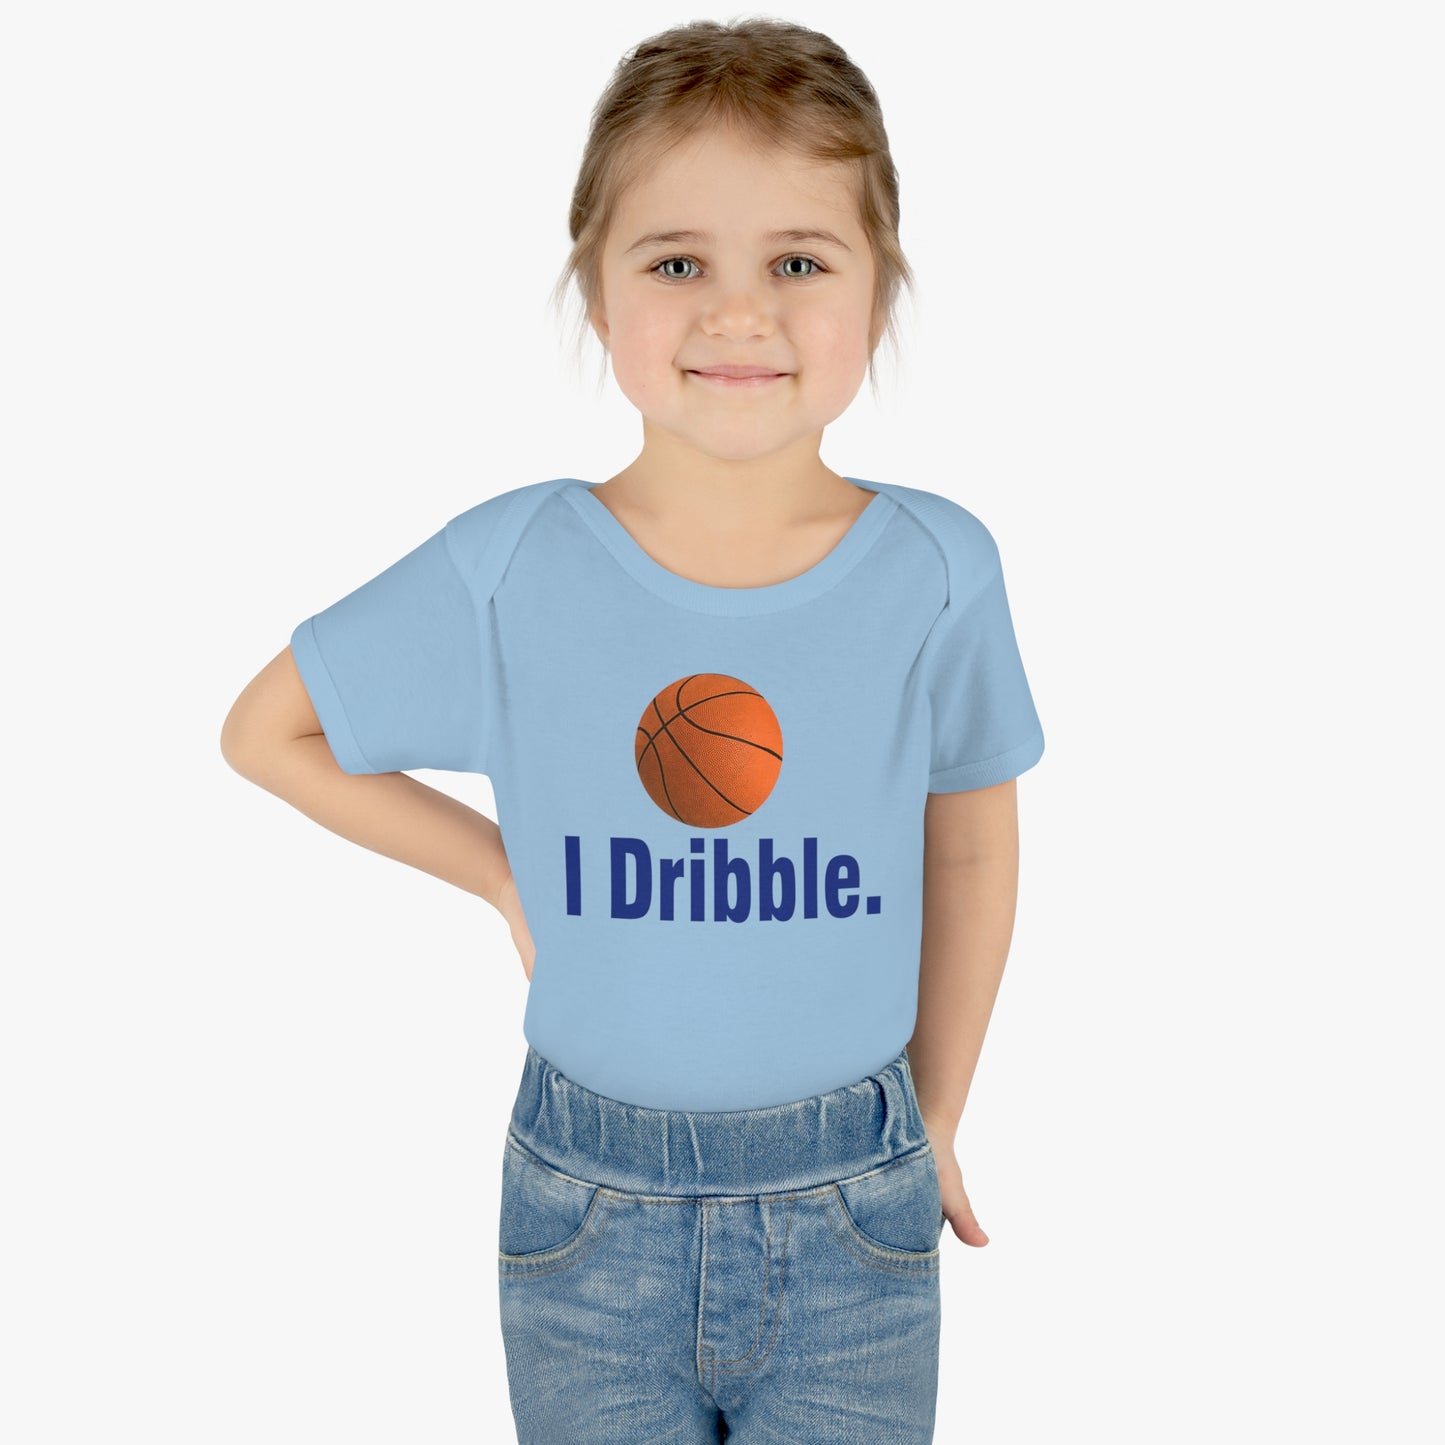 I Dribble, funny basketball Infant Baby Rib Bodysuit for littlest Basketball Future Fan, Baby Shower gift, Basketball Baby, Basketball Child